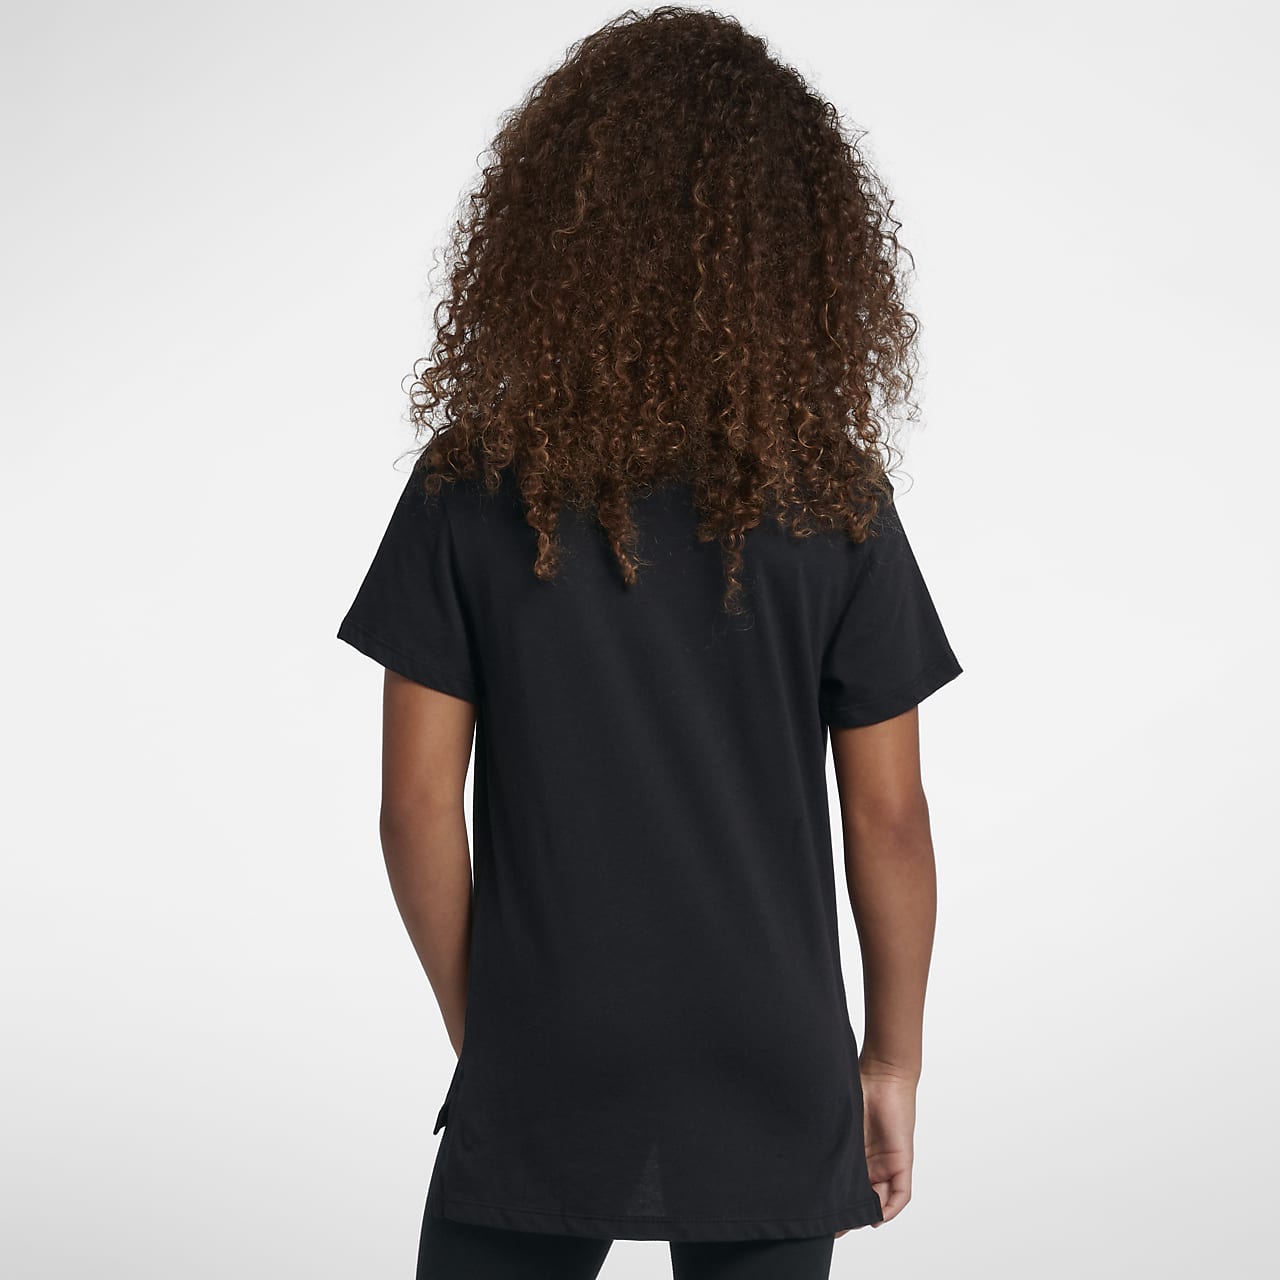 Nike Sportswear Older Kids' (Girls') T-Shirt. Nike IL